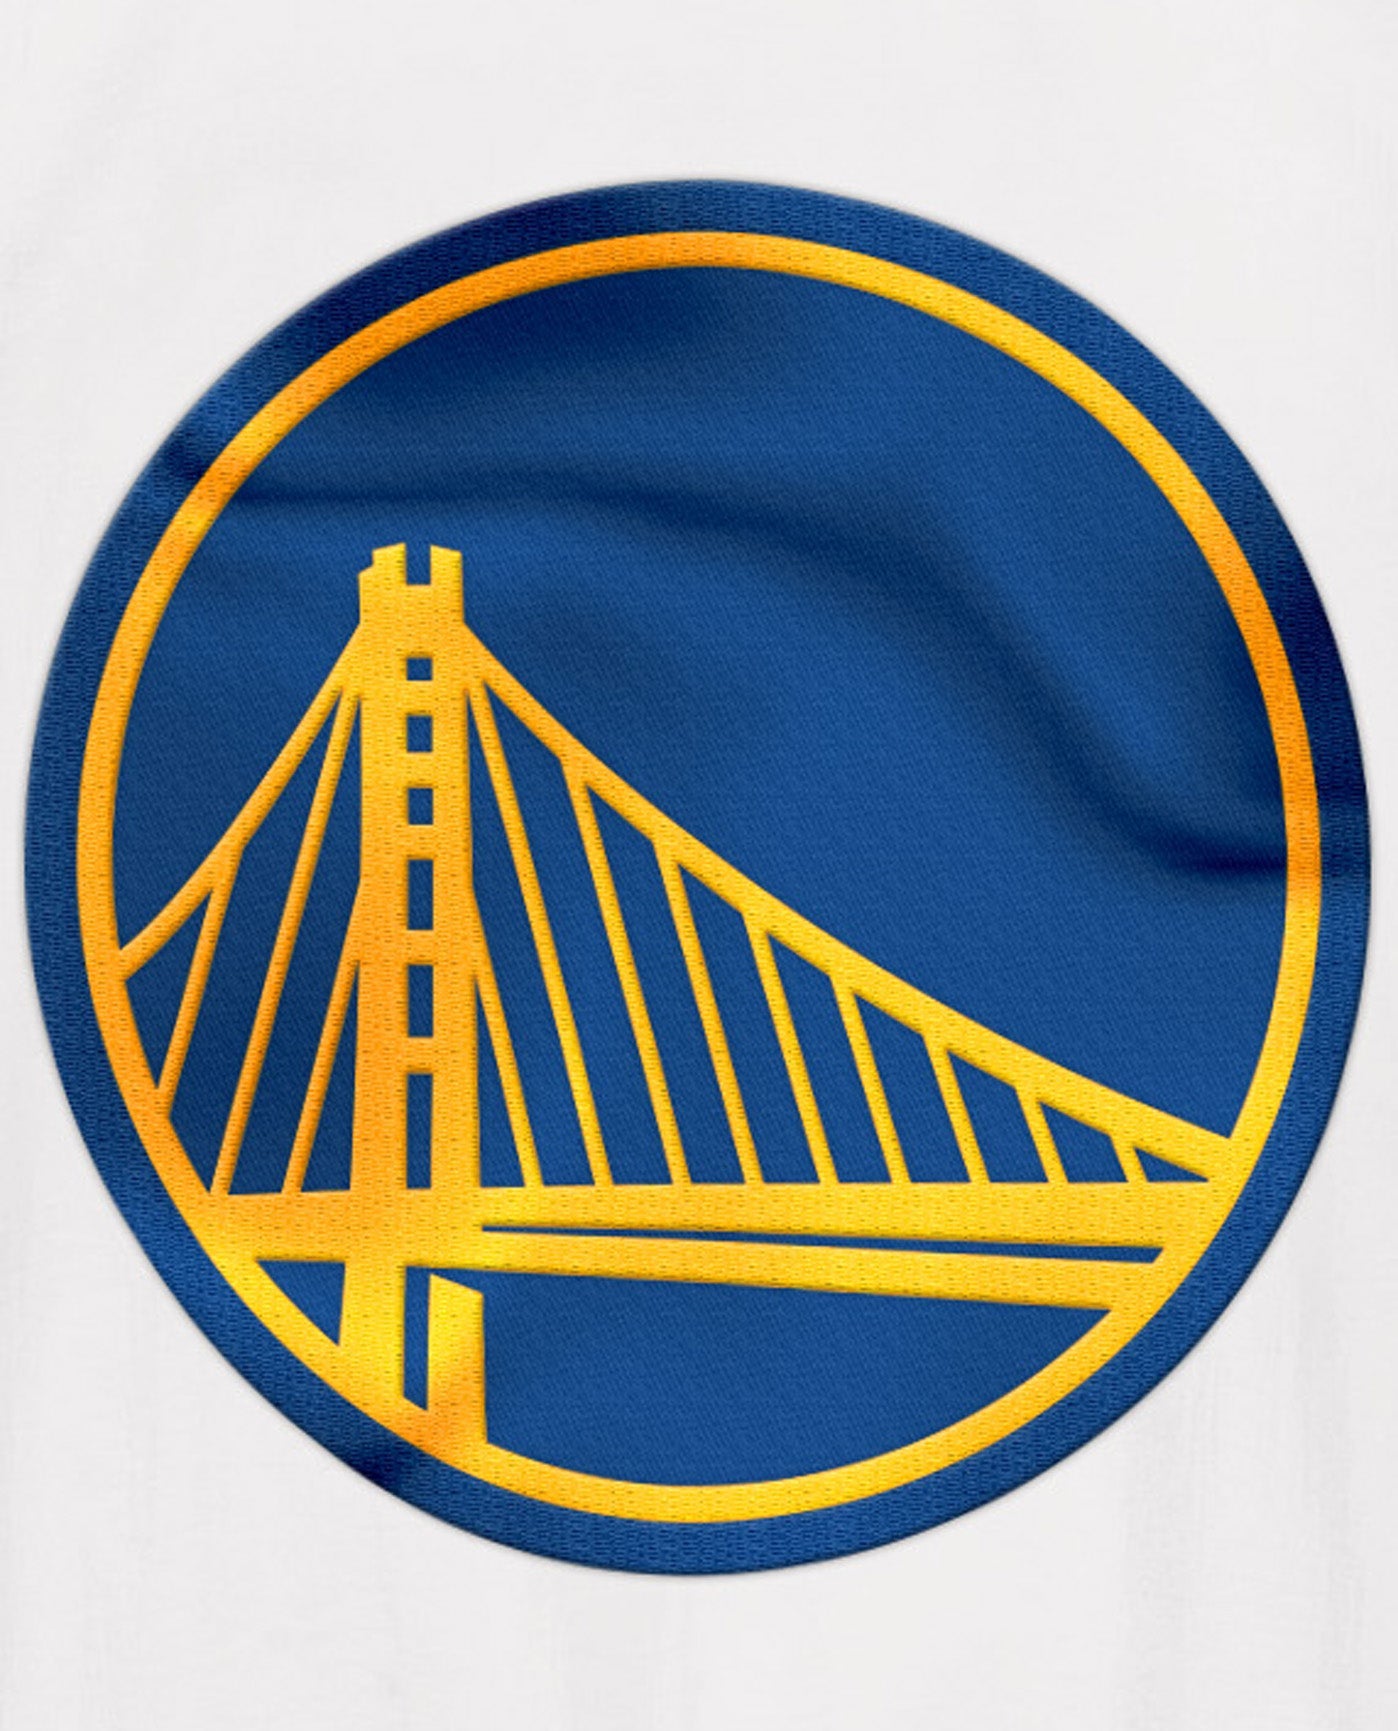 NBA:Warriors Golden State Warriors Unisex Jacquard Sweater, XL